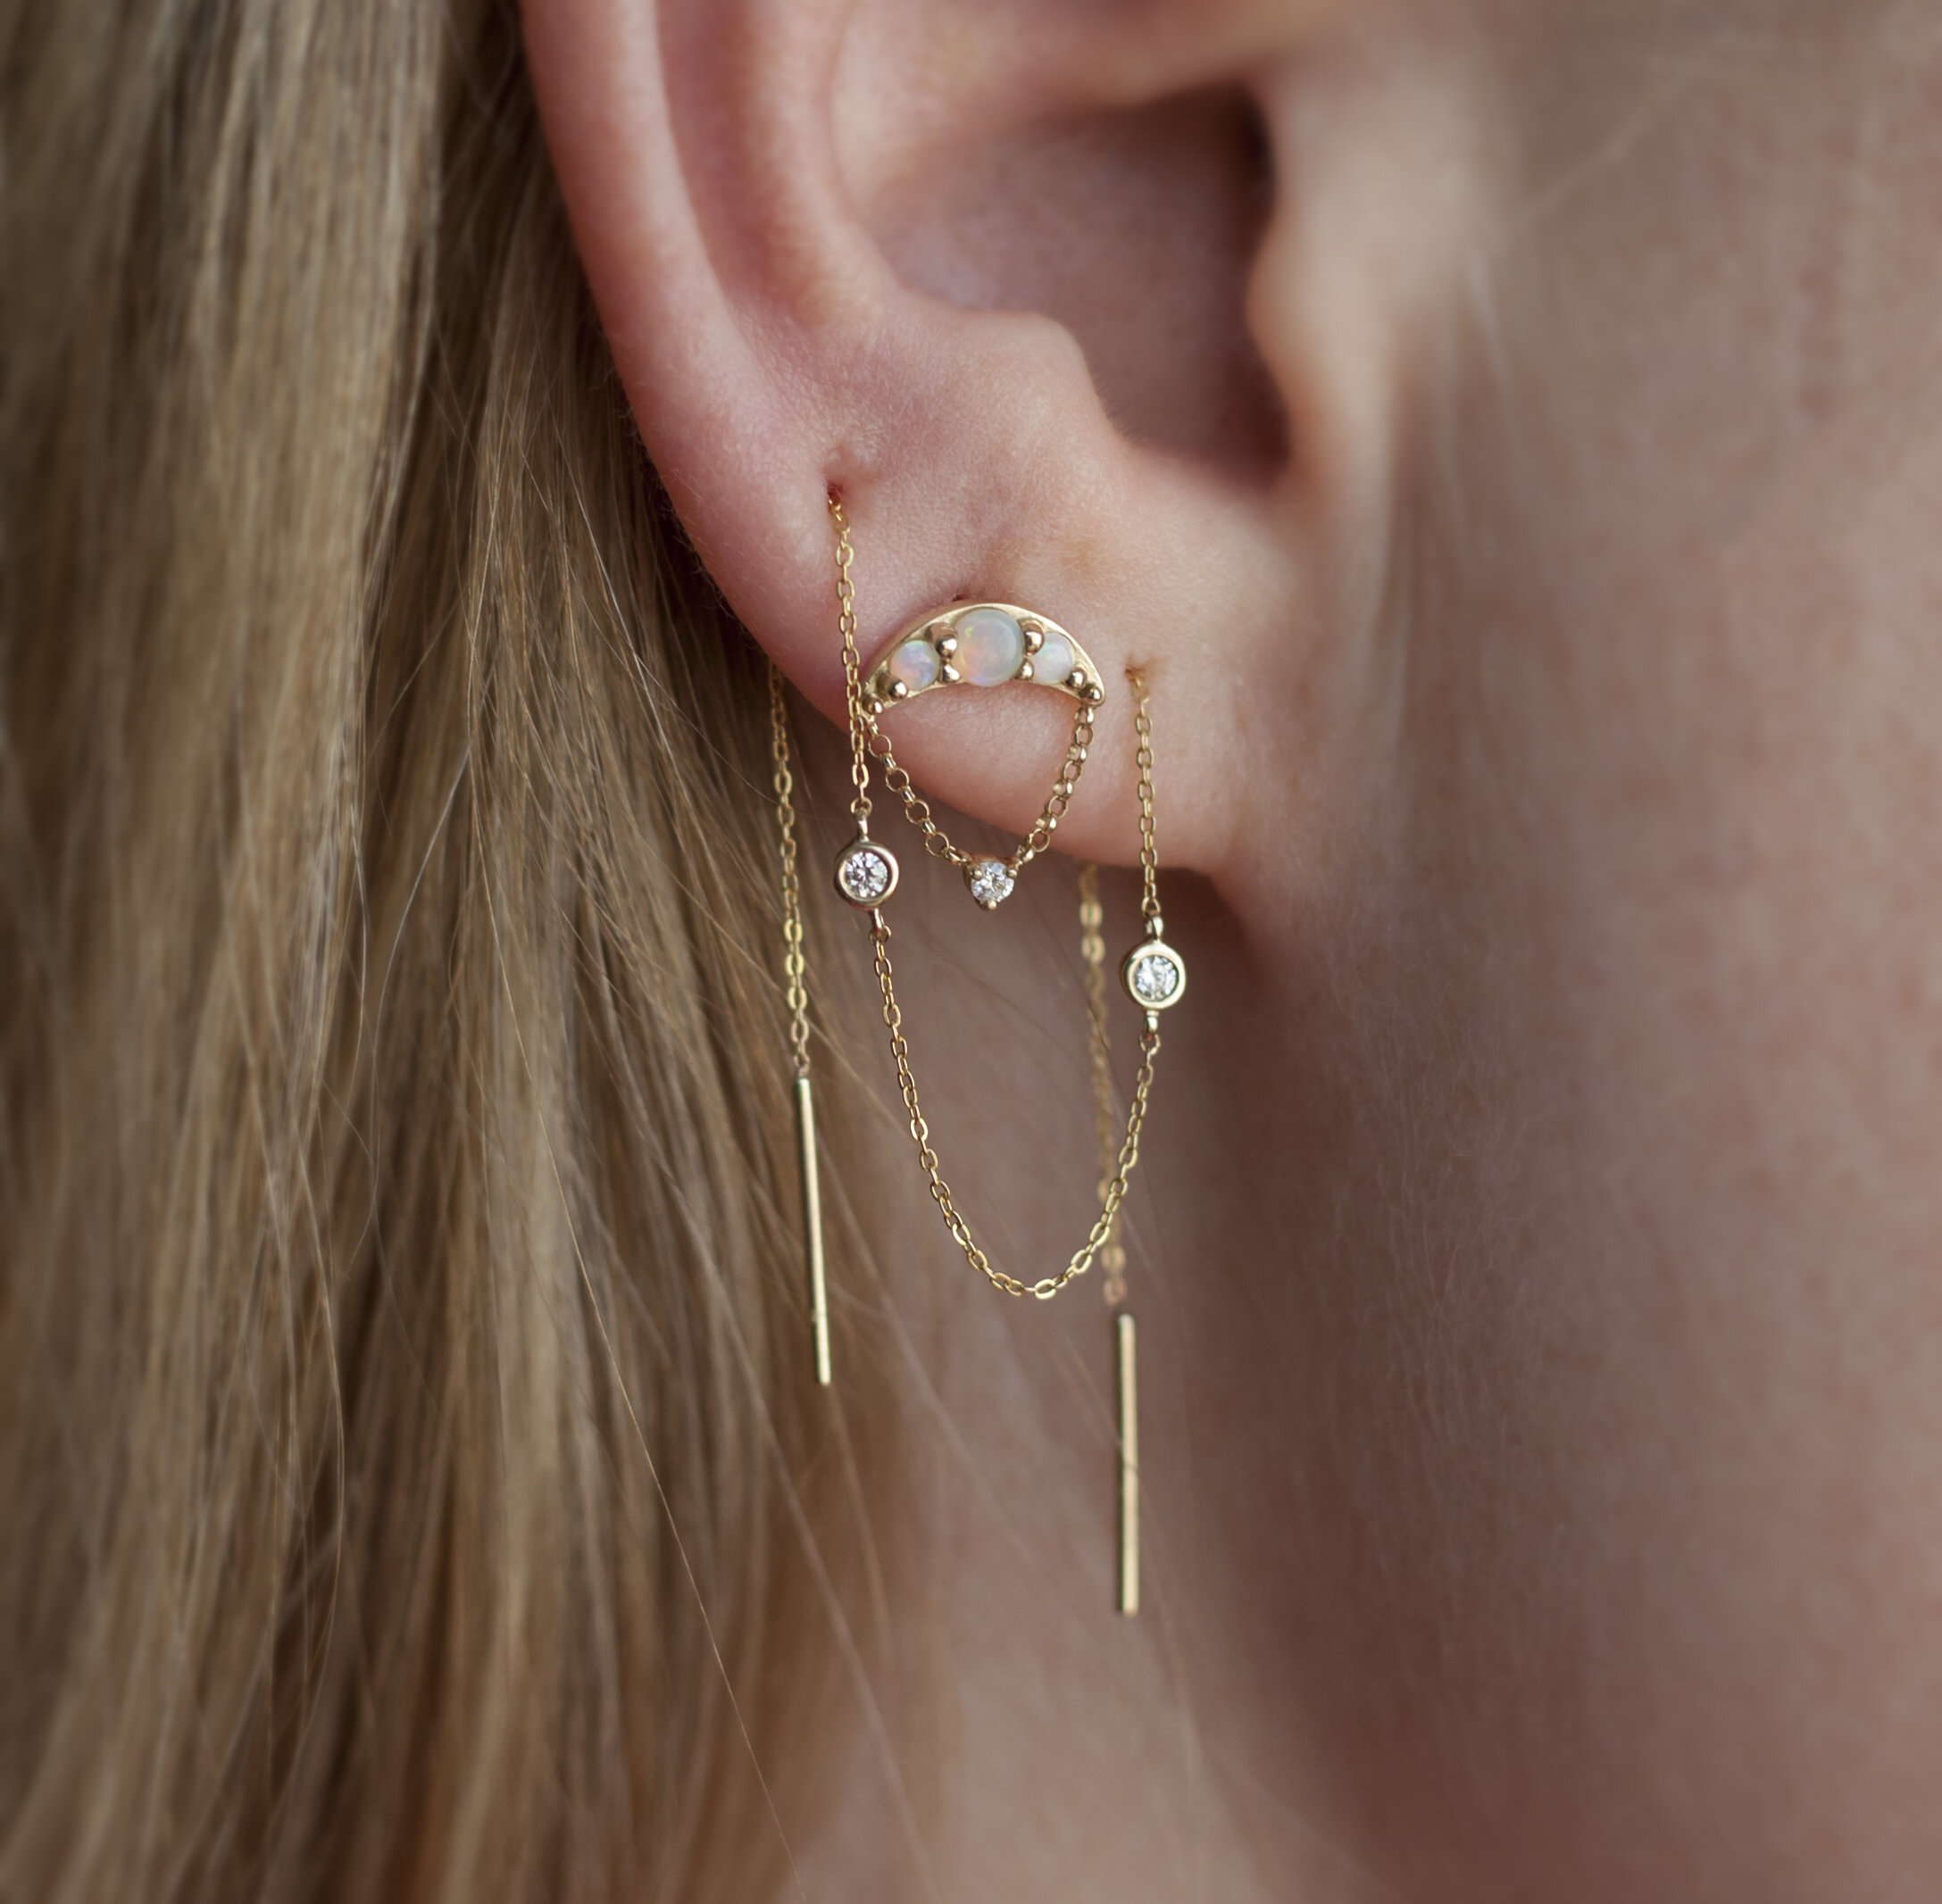 flat-back-earrings-screwbacks-for-multiple-piercings - ComfyEarrings.com